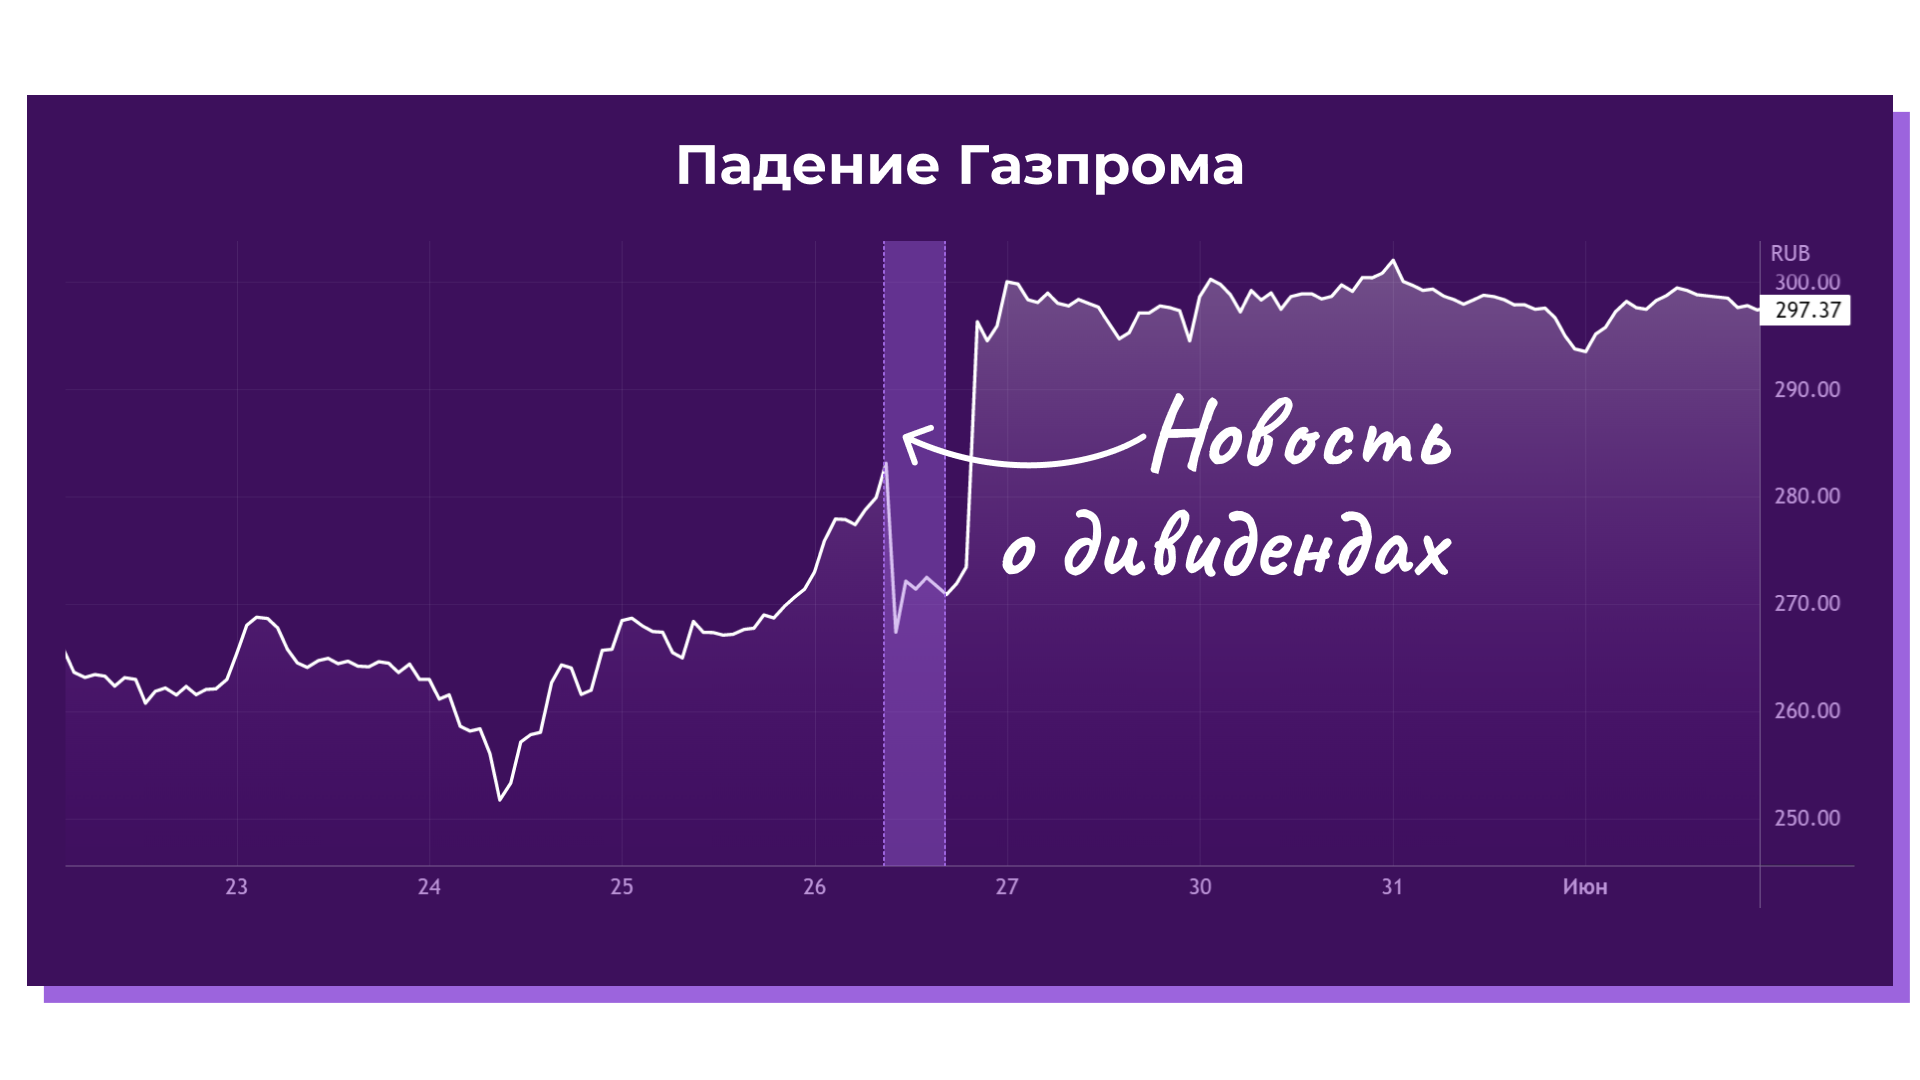 Падение акций Газпрома на фоне новости о дивидендах